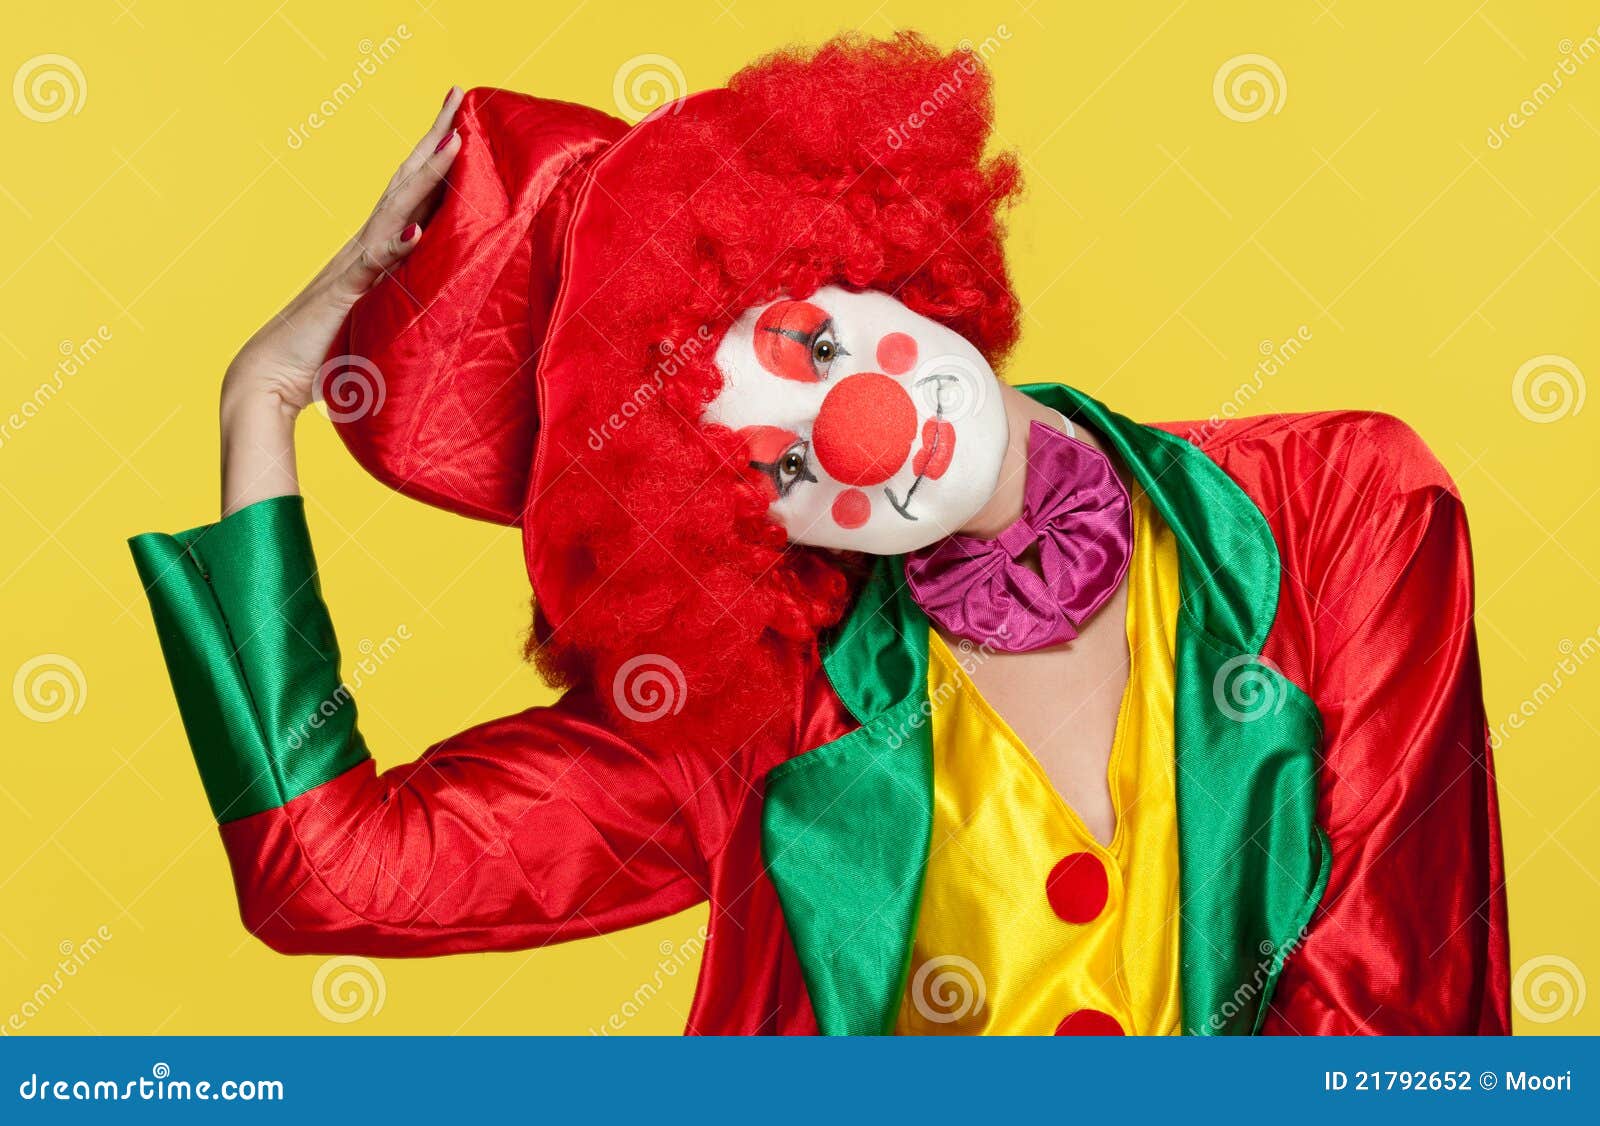 Клоун растение. Клоун с цветами. Чемодан клоуна. Red Clown banner.